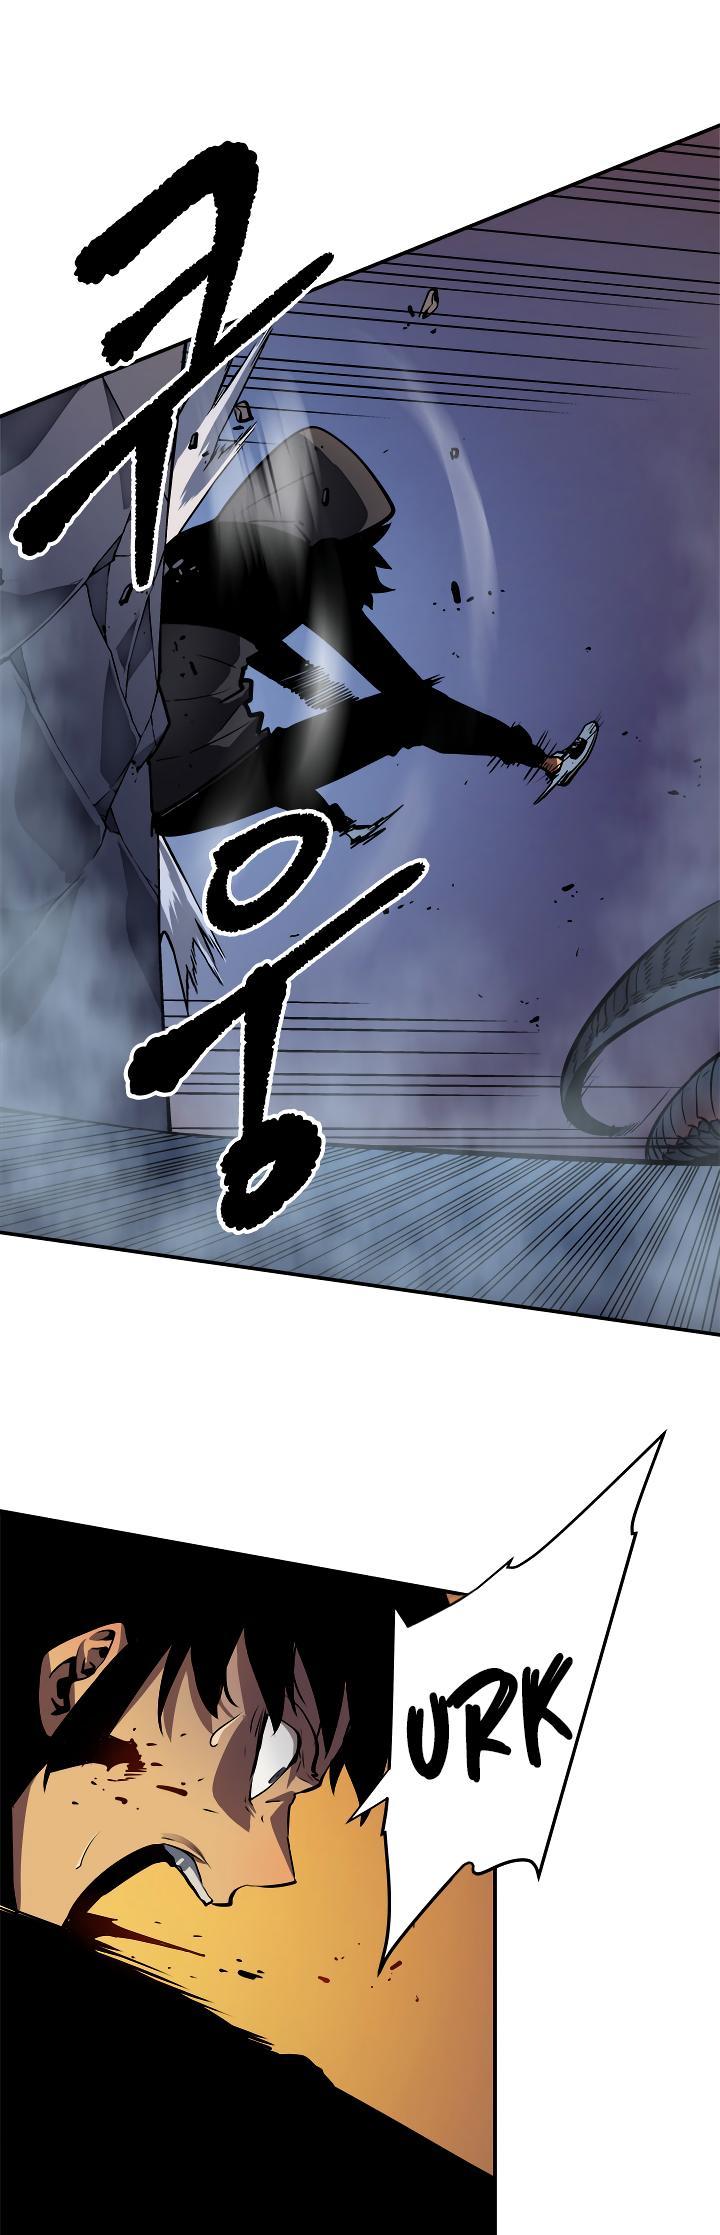 Solo Leveling Chapter 15 page 40 - Mangakakalot